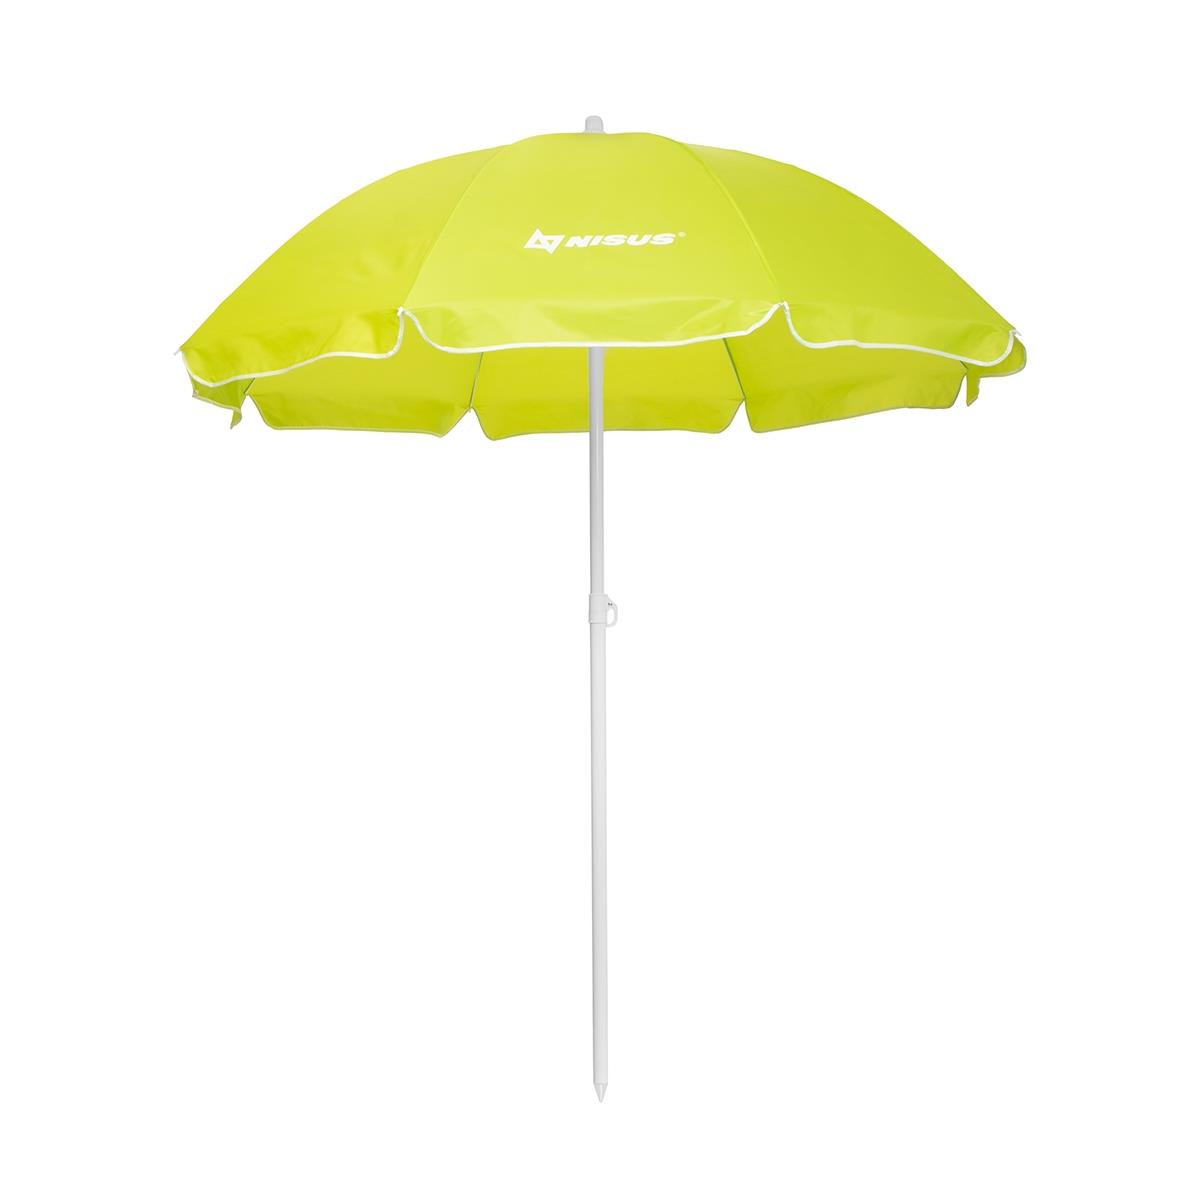 Зонт пляжный d 2,4м прямой (28/32/210D) NA-240-LG Nisus зонт пляжный d 2 4м с наклоном 28 32 210d na 240n lg nisus